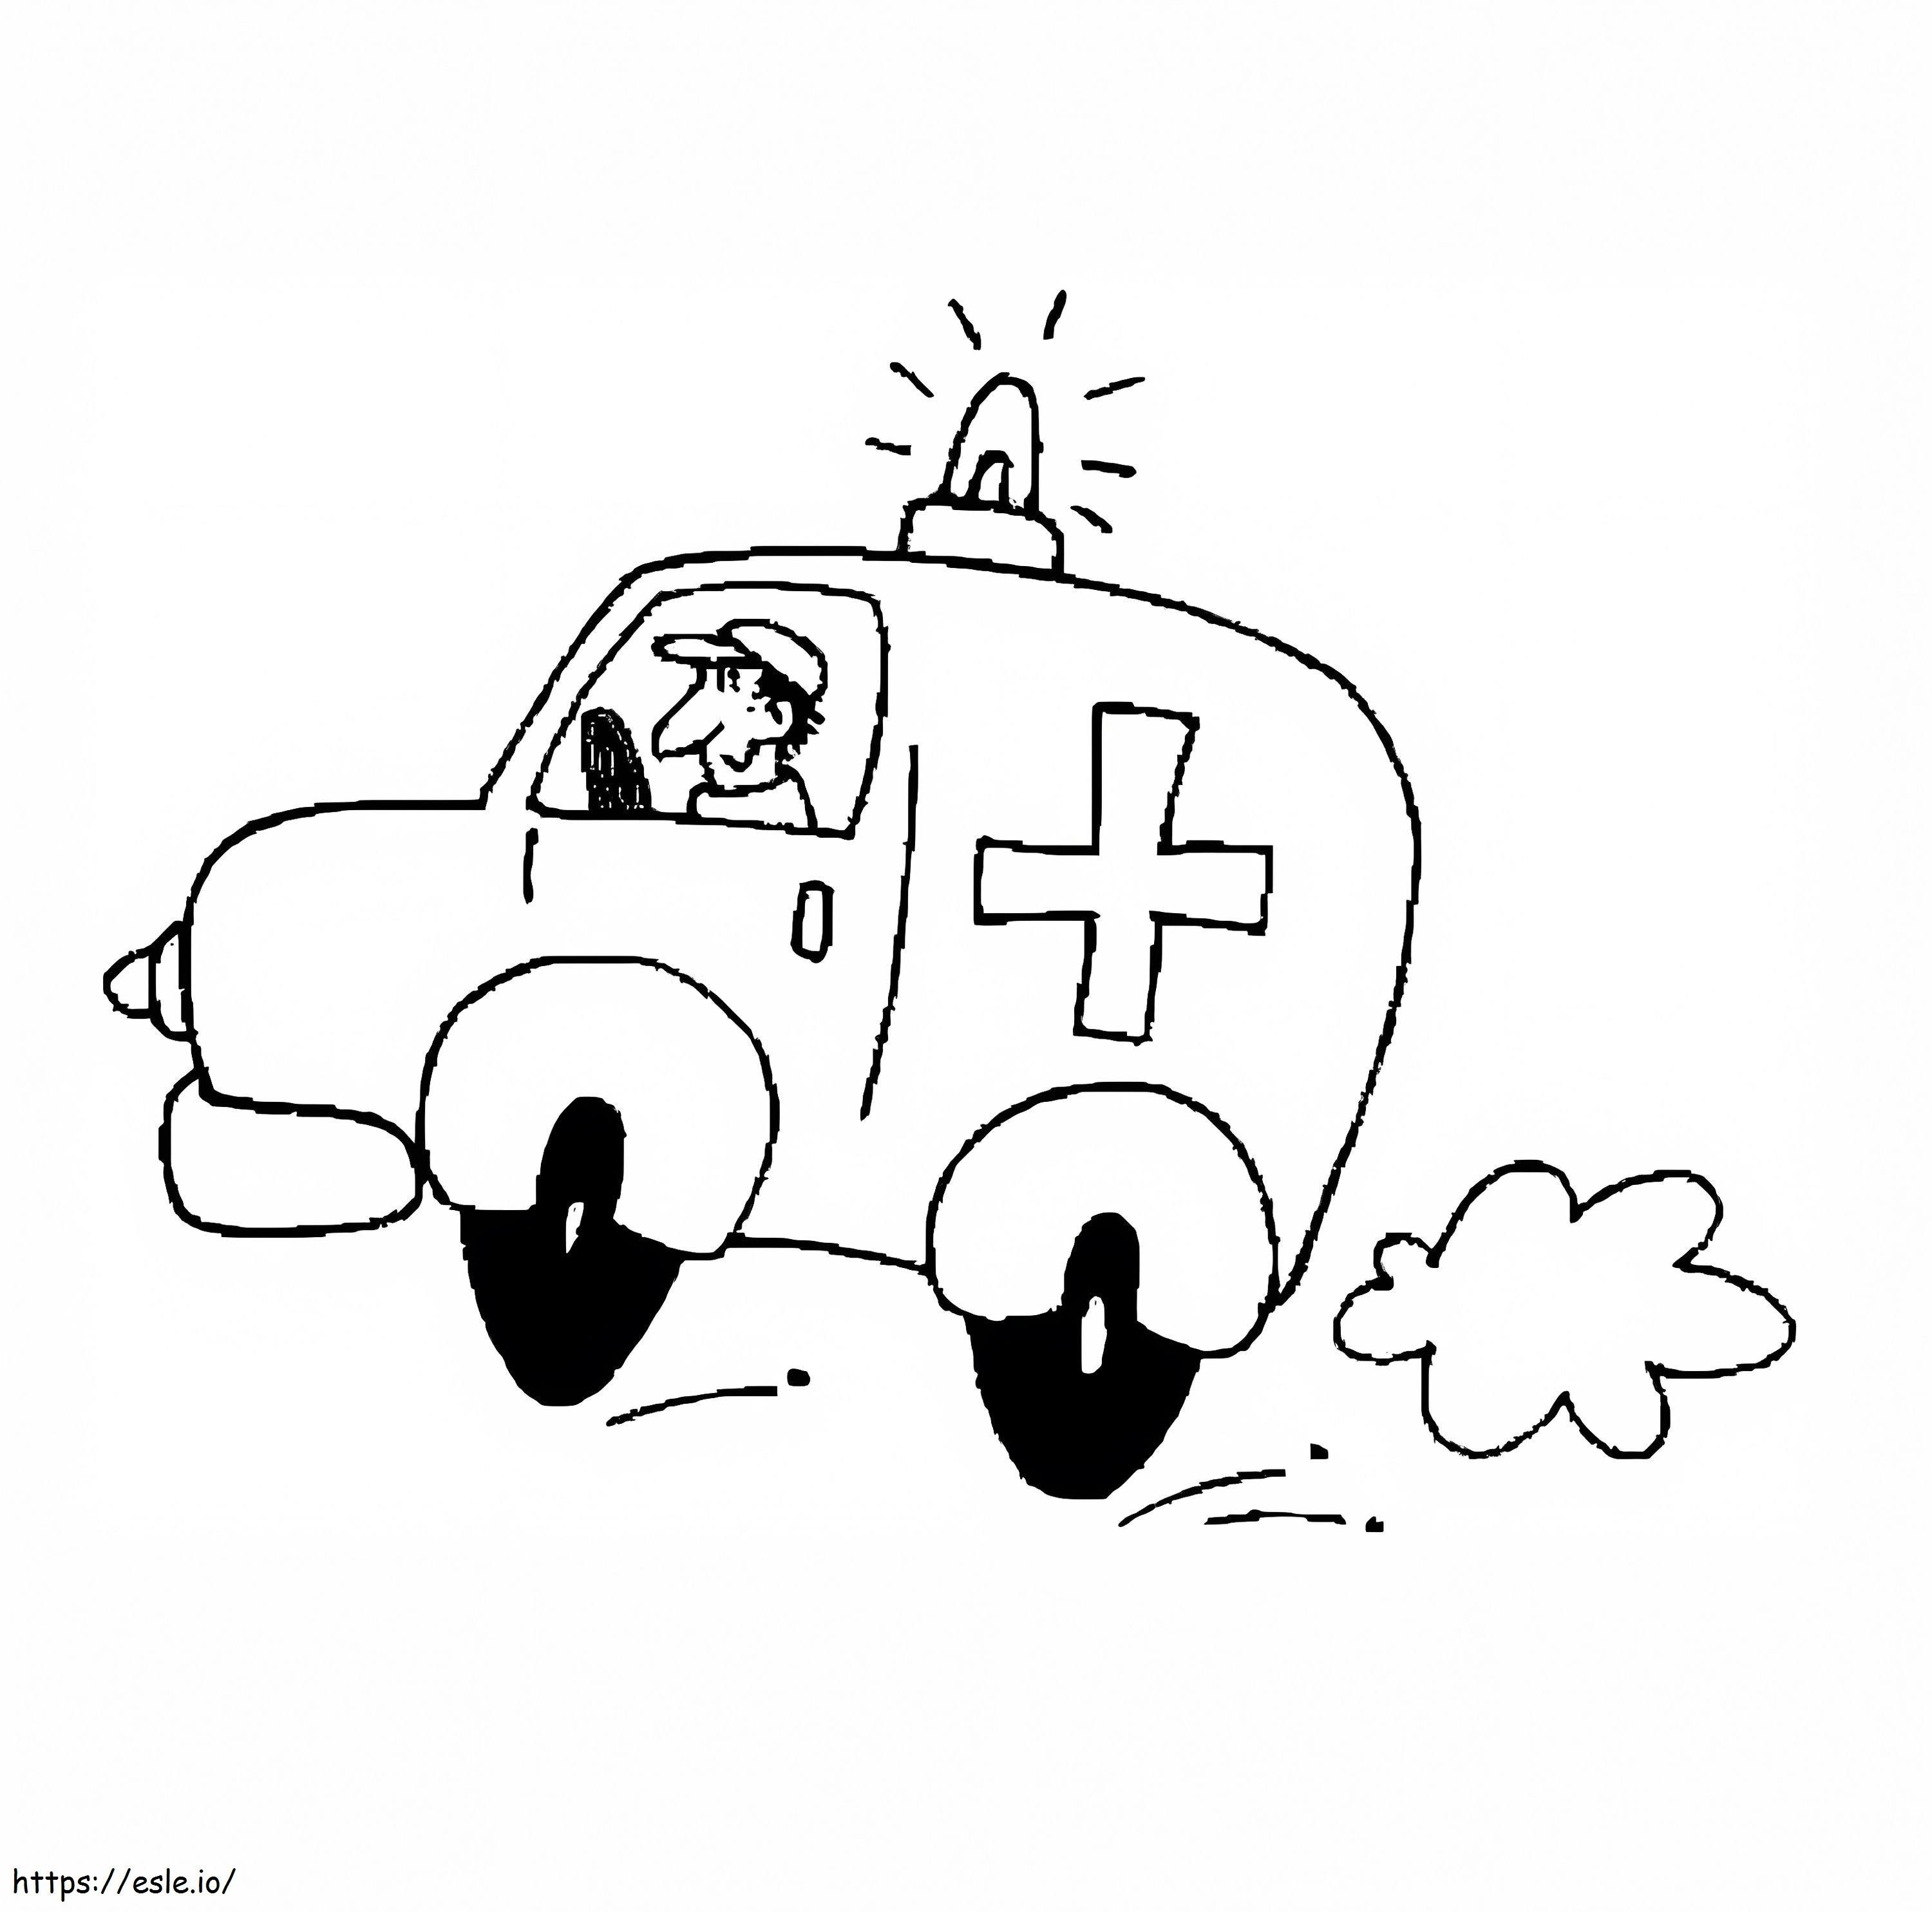 Ambulance 9 coloring page